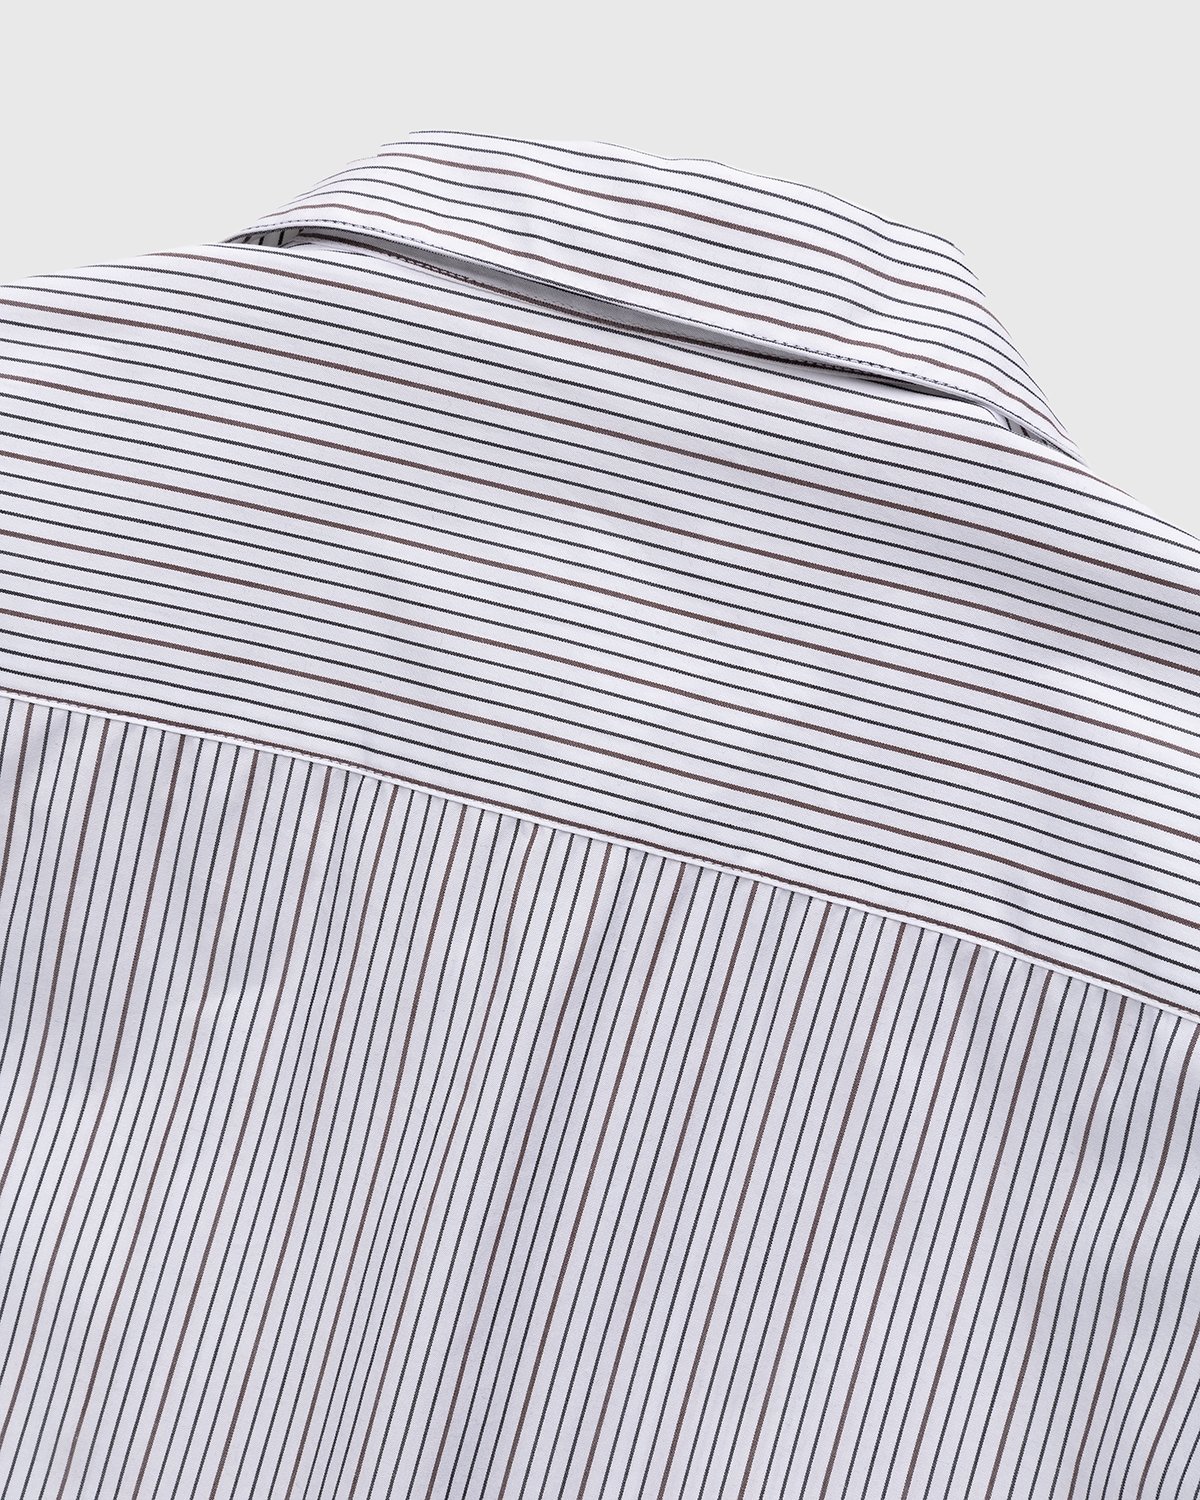 Highsnobiety - Striped Poplin Short-Sleeve Shirt White/Black - Clothing - White - Image 4